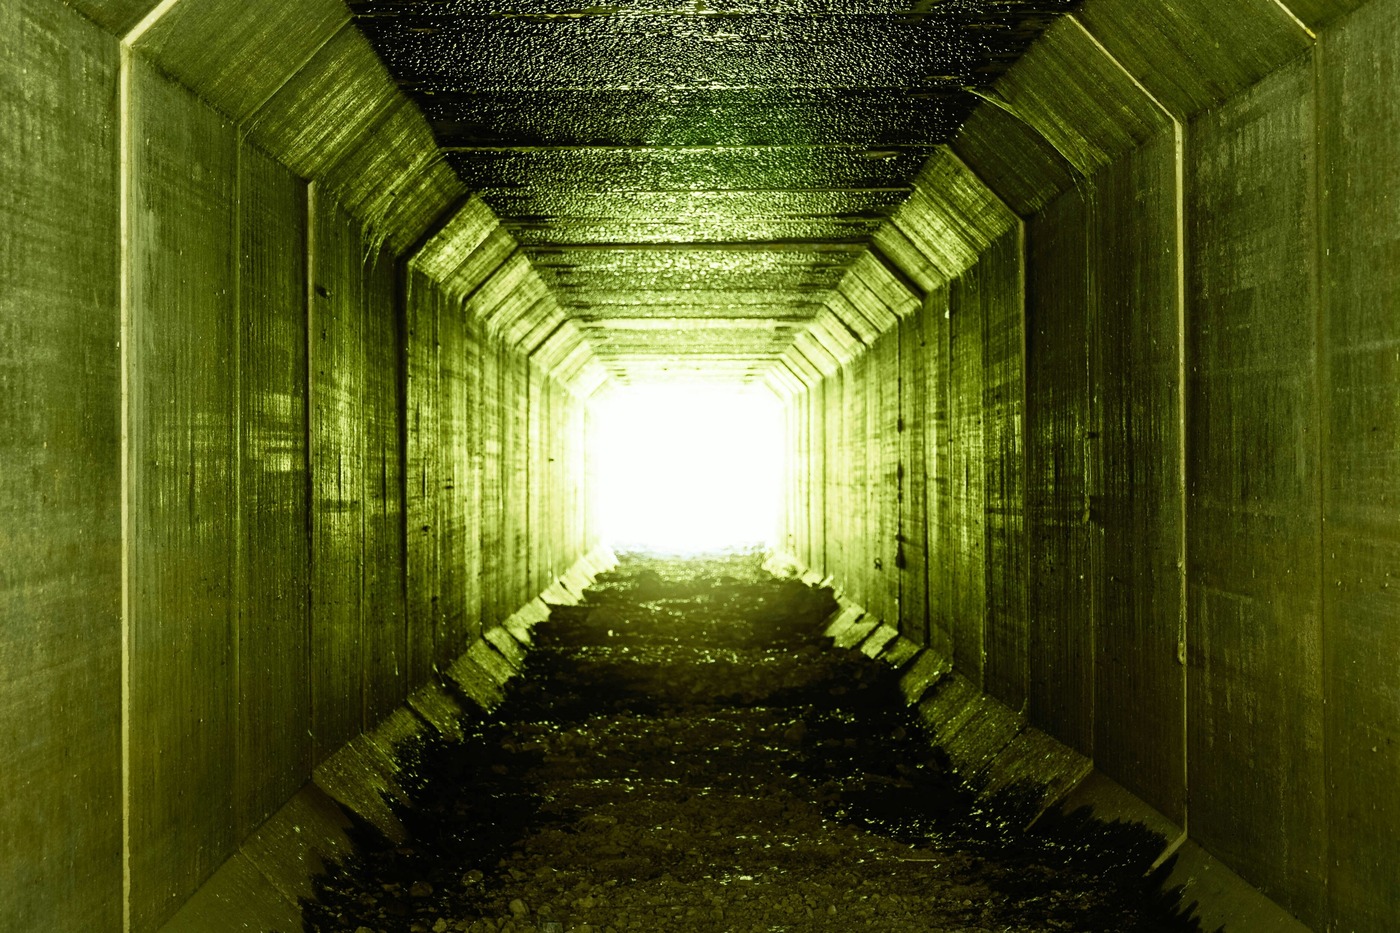 An underground bunker tunnel